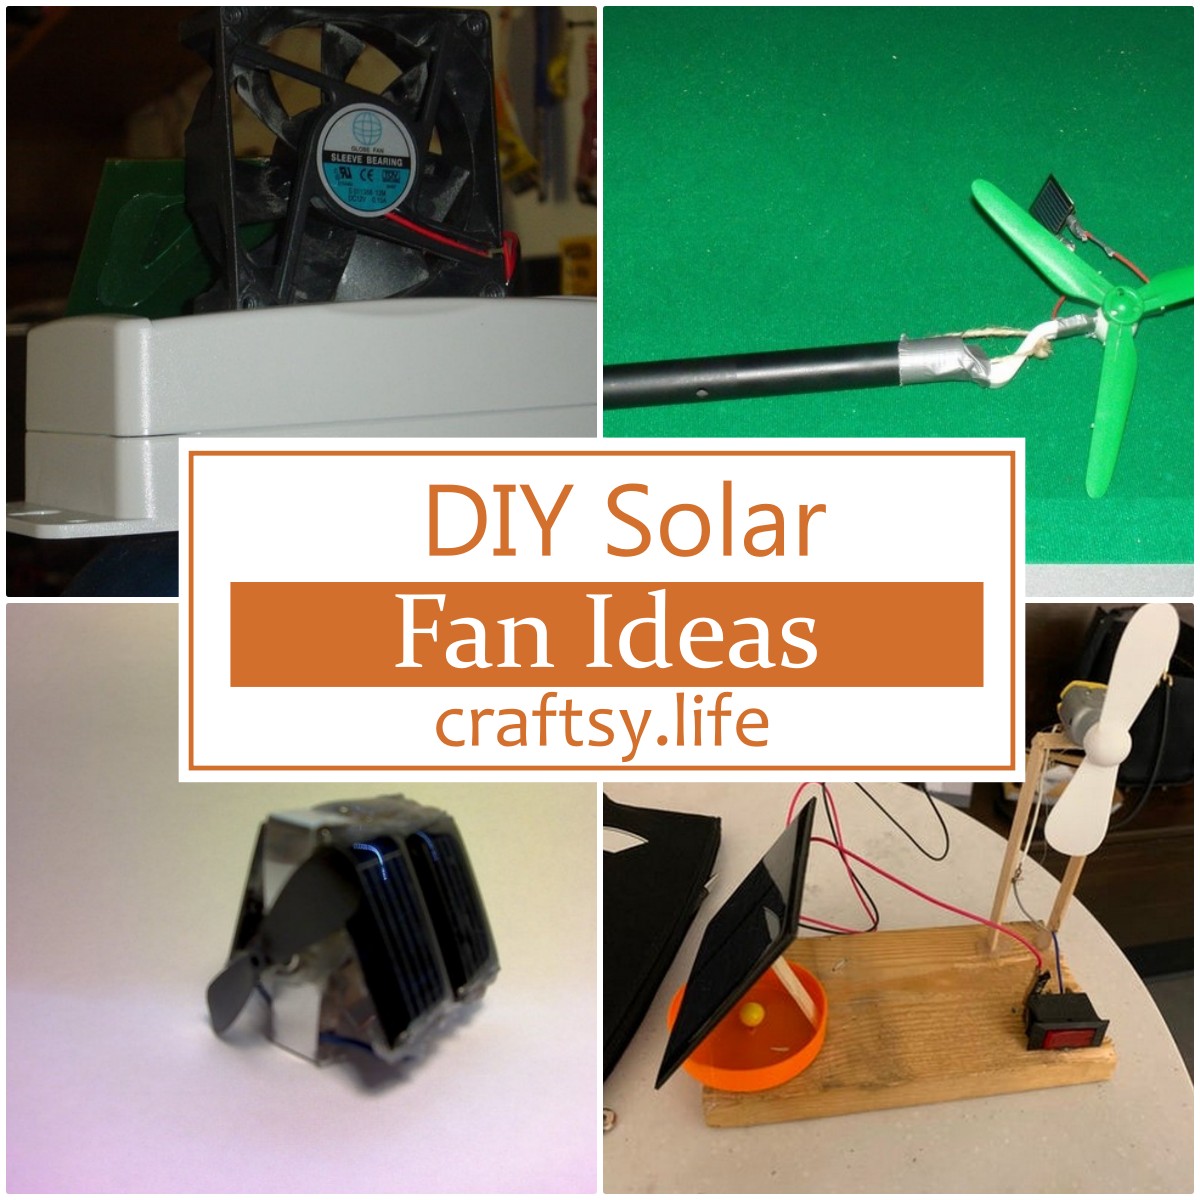 DIY Solar Fan Ideas